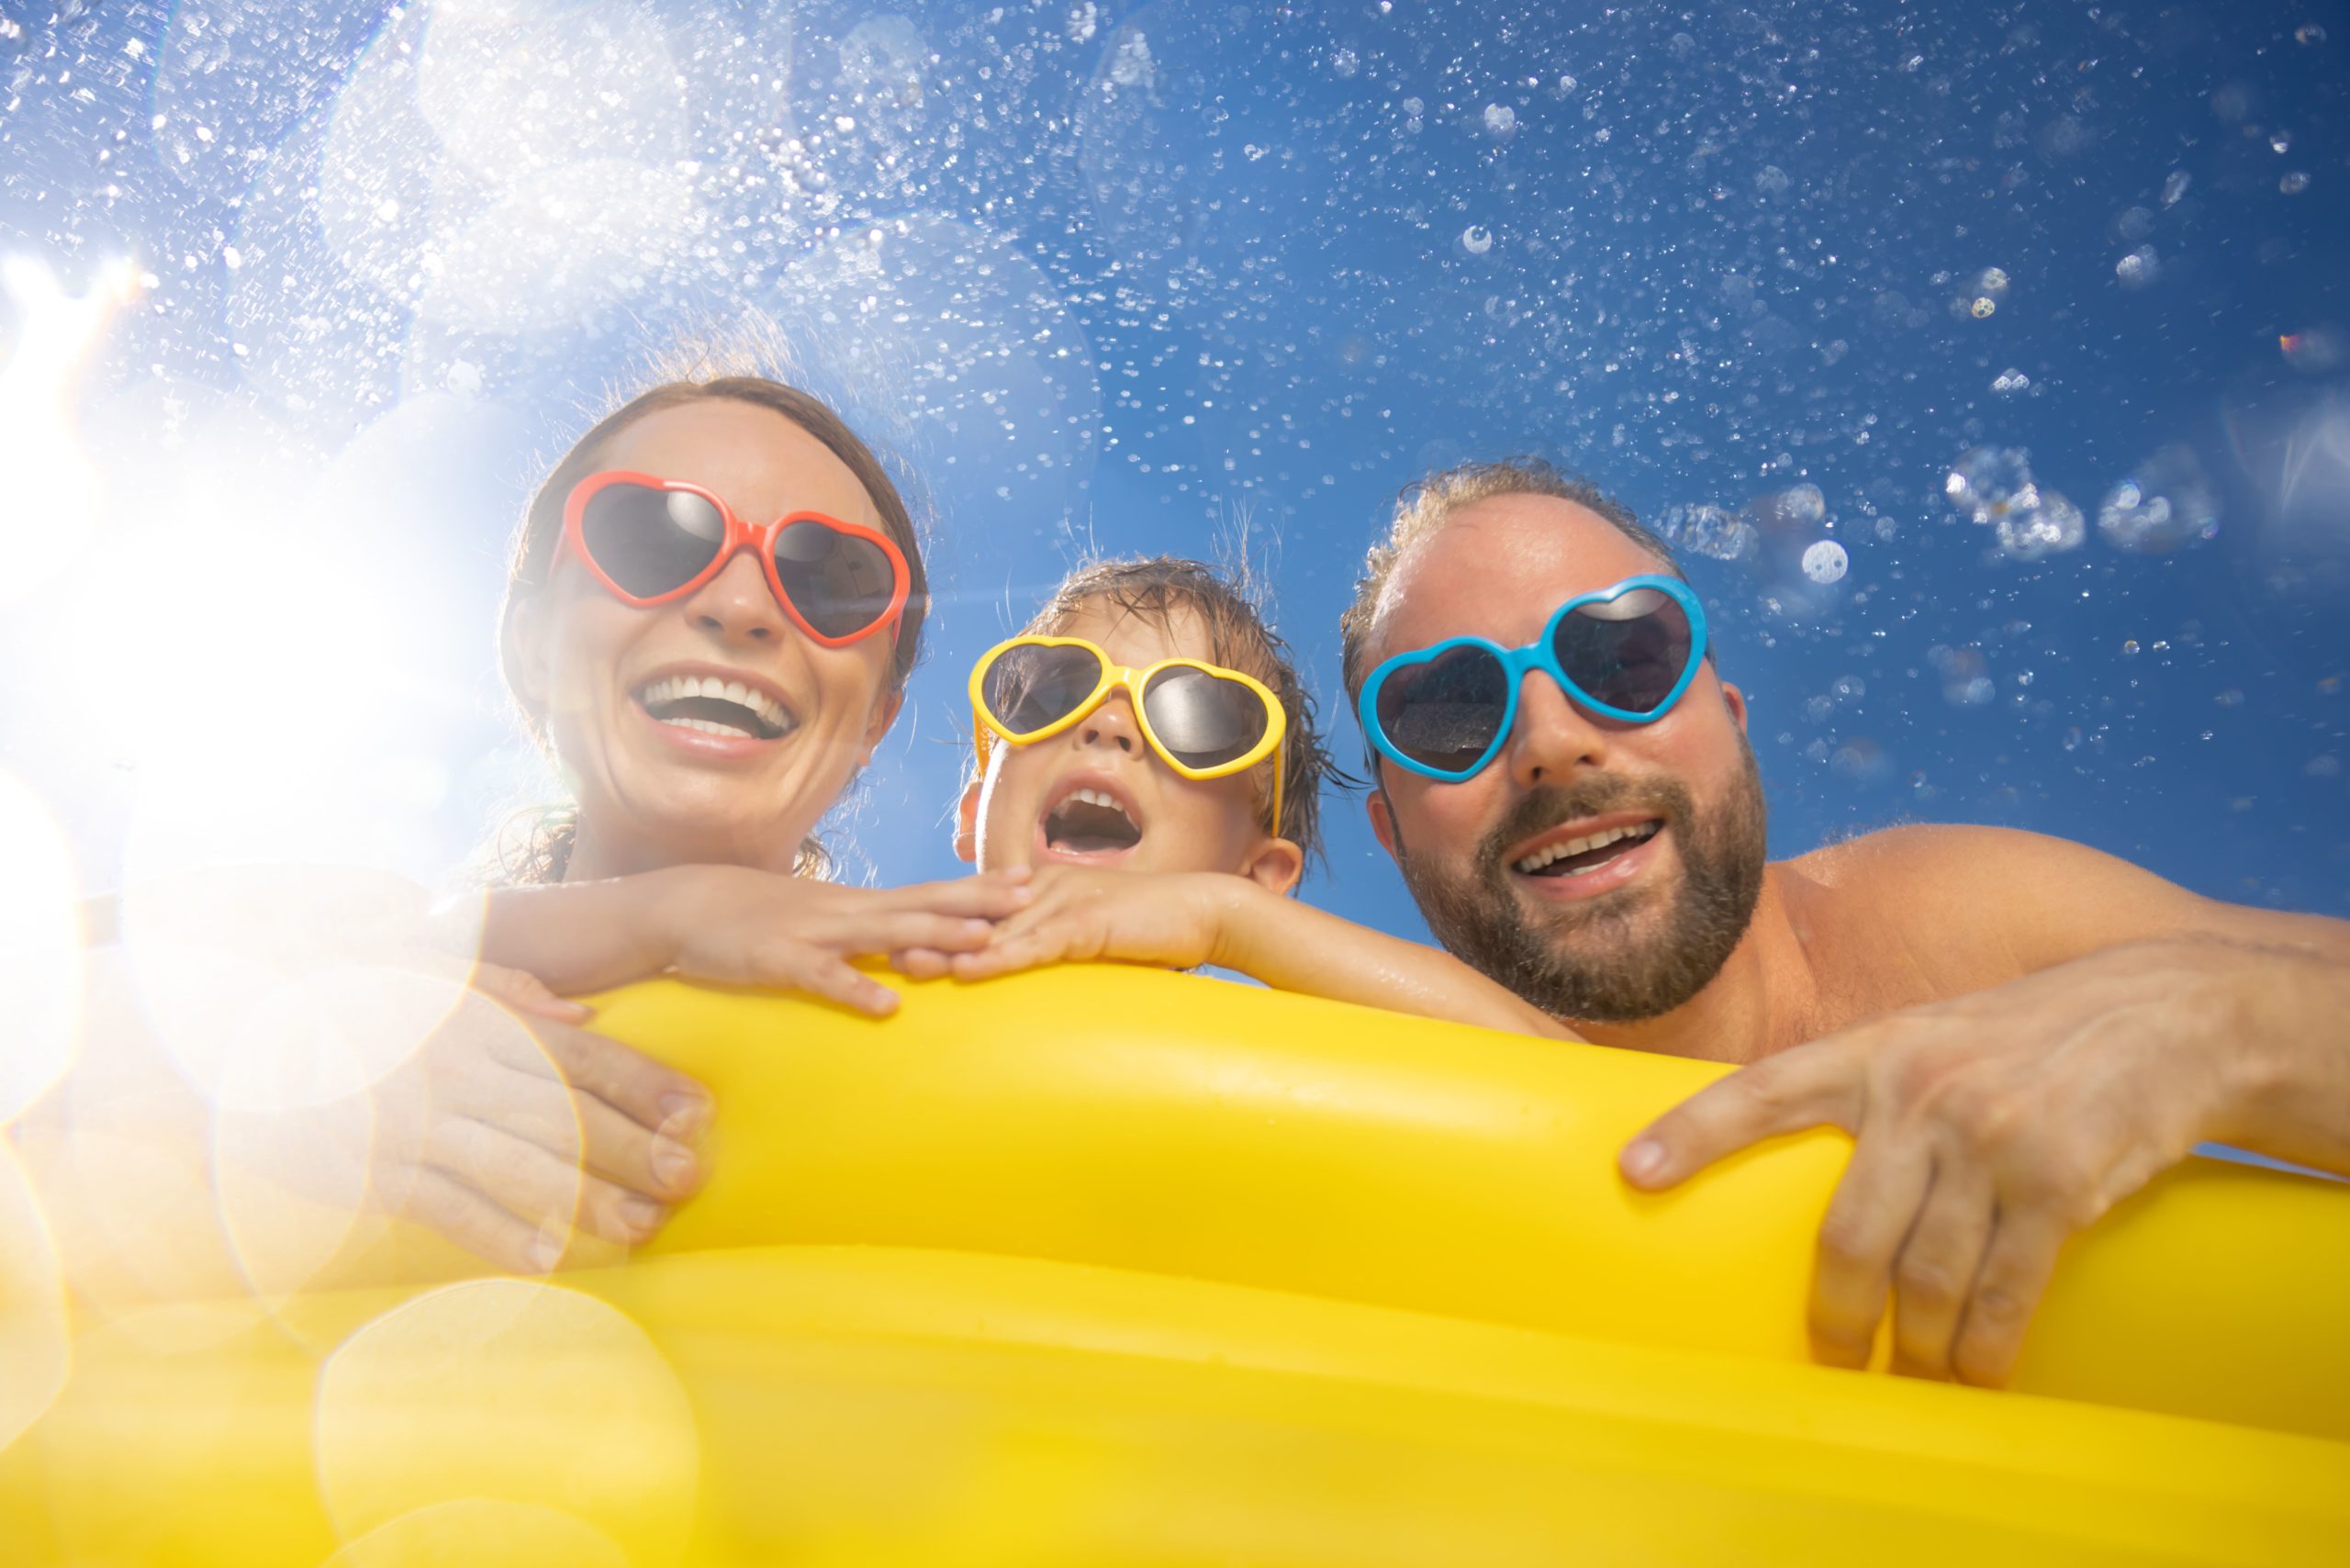 Wybierasz się na wakacje z dzieckiem? Poznaj 3 pomysły, dzięki którym wypoczniesz, a maluch nie zapomni ich do końca życia!